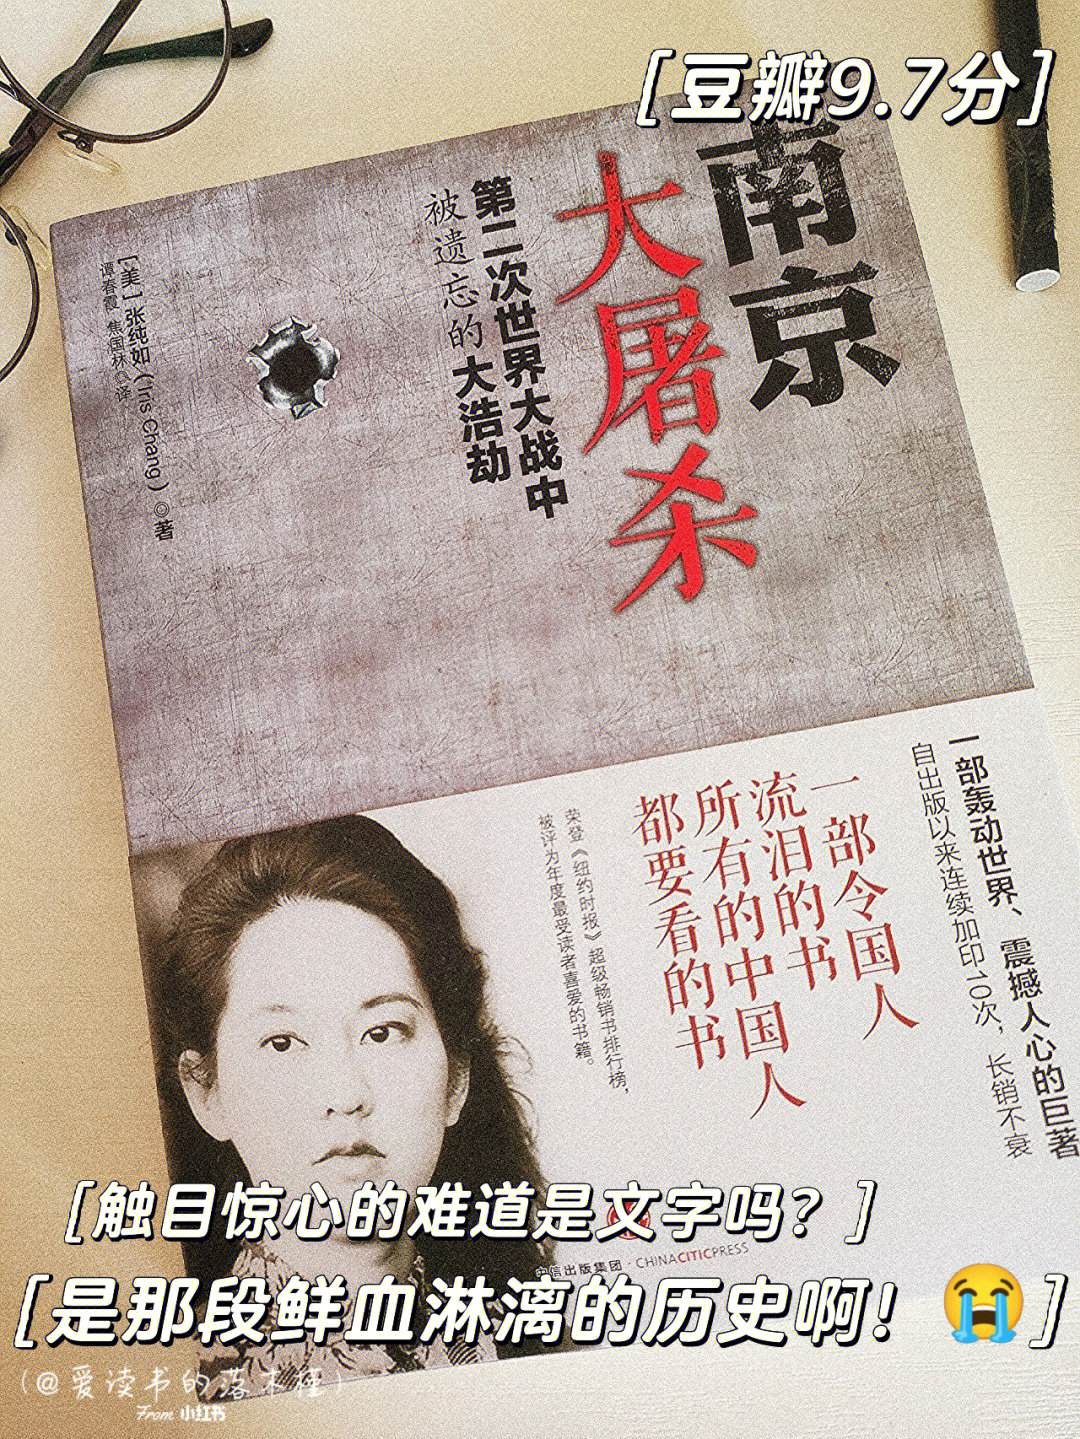 书名:《南京大屠杀》作者:张纯如94小时候学历史,只觉得这是一件